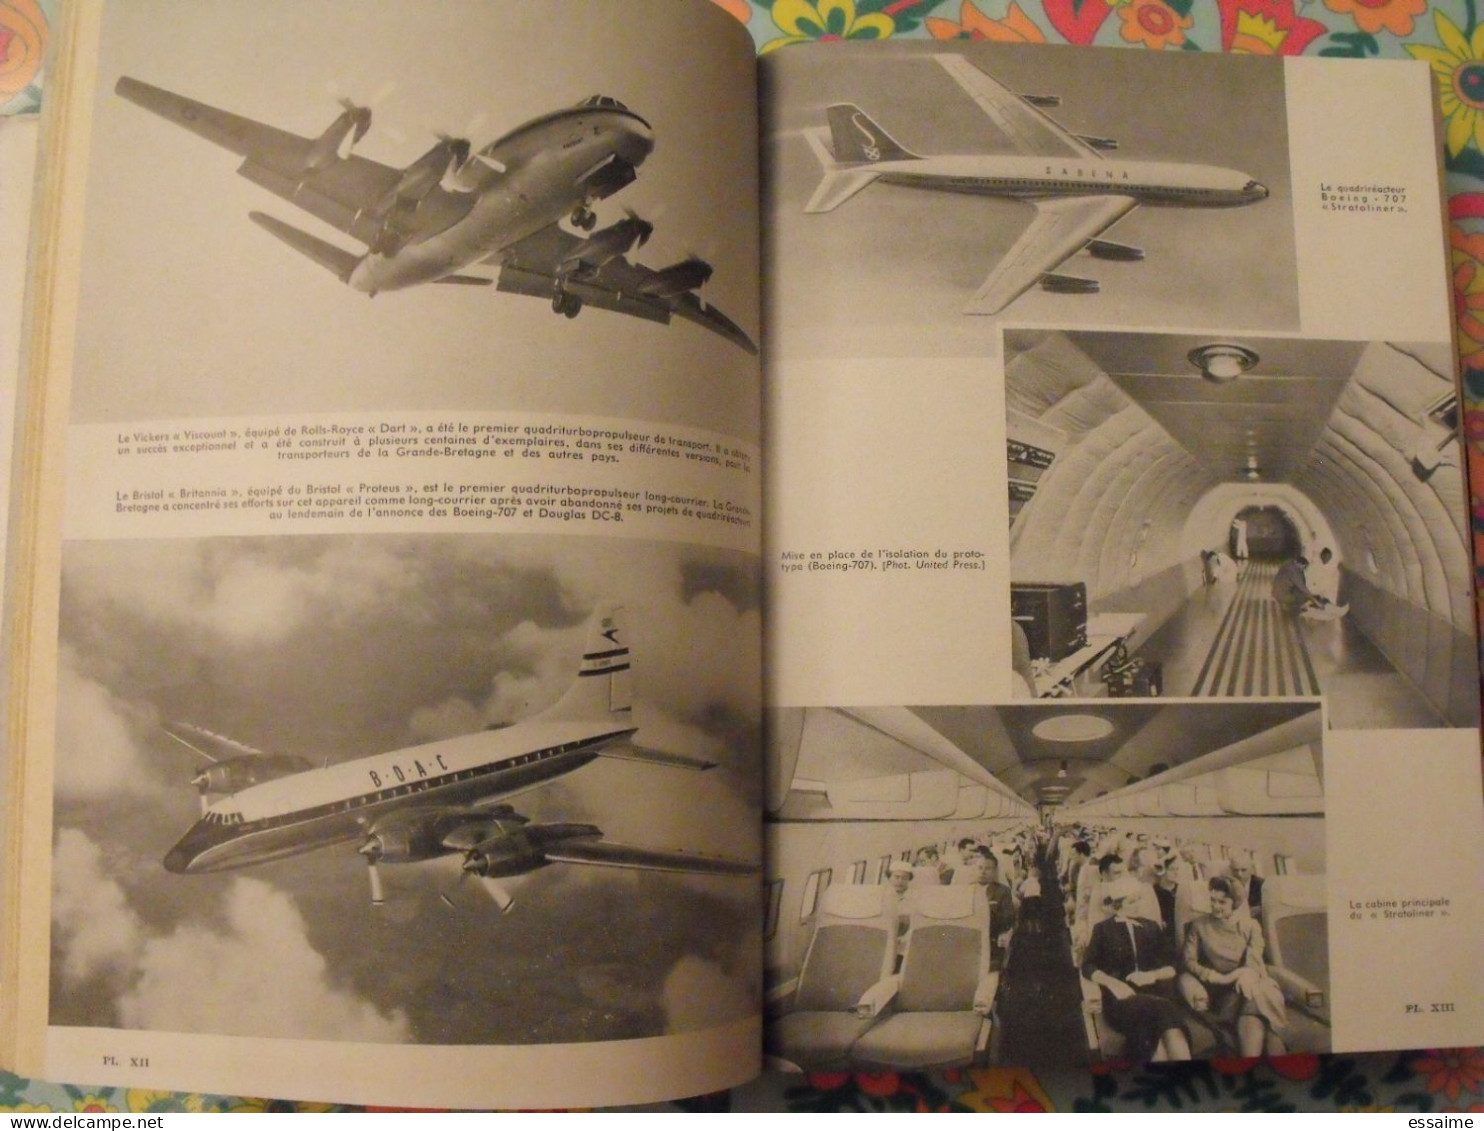 l'aviation nouvelle. camille rougeron. illustrations de jean Lattapy. Larousse 1957